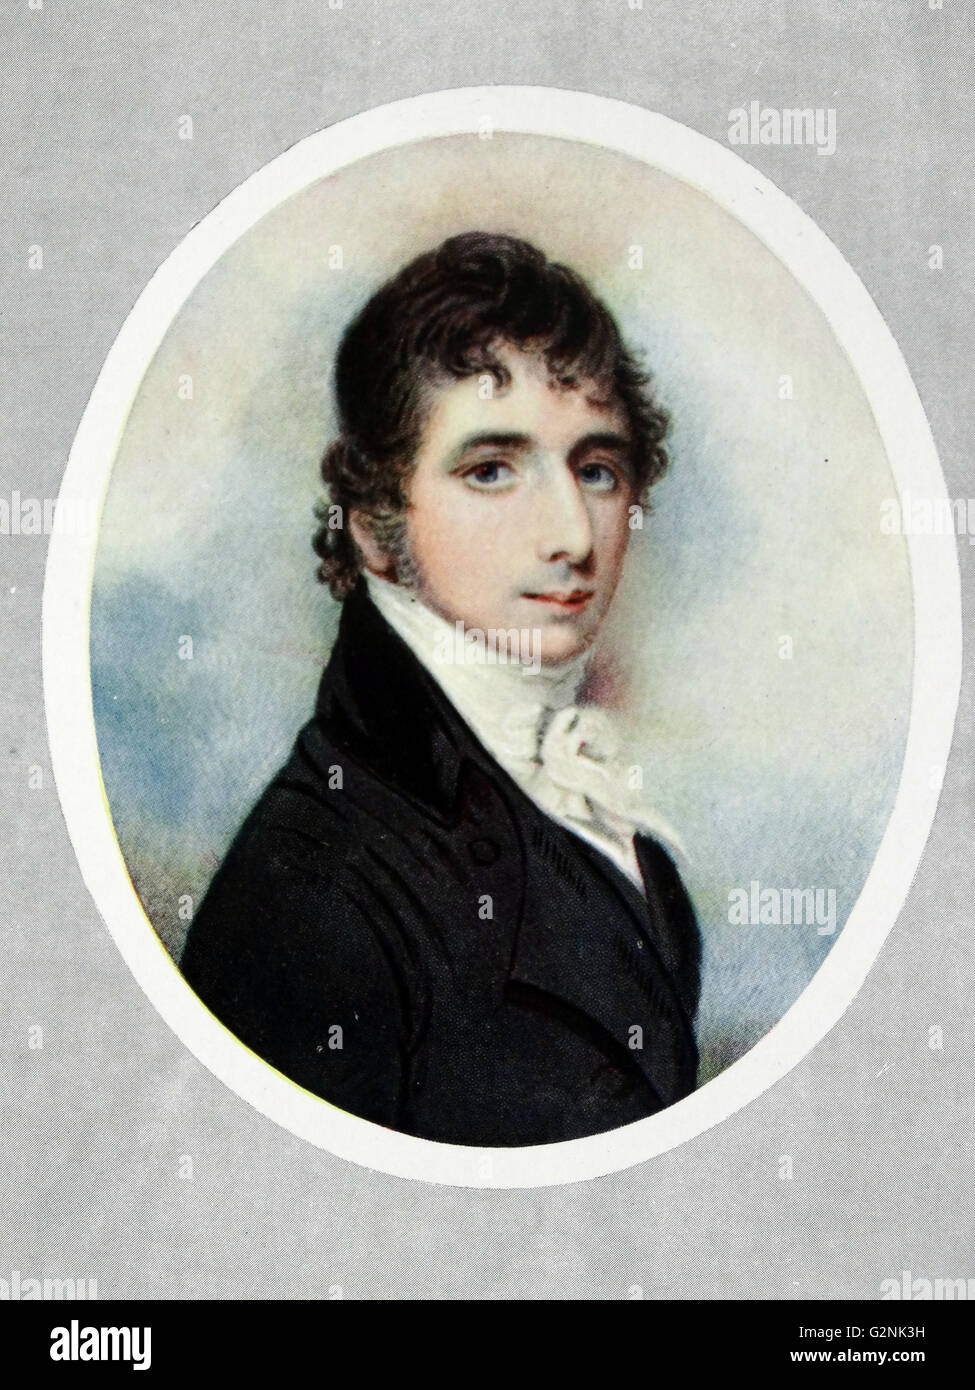 Henry Tufton, onzième et dernier comte de Thanet (1775-1849) par Richard Cosway (1742-1821), un des leaders français portraitiste de l'époque Régence, remarqué pour ses miniatures. Banque D'Images